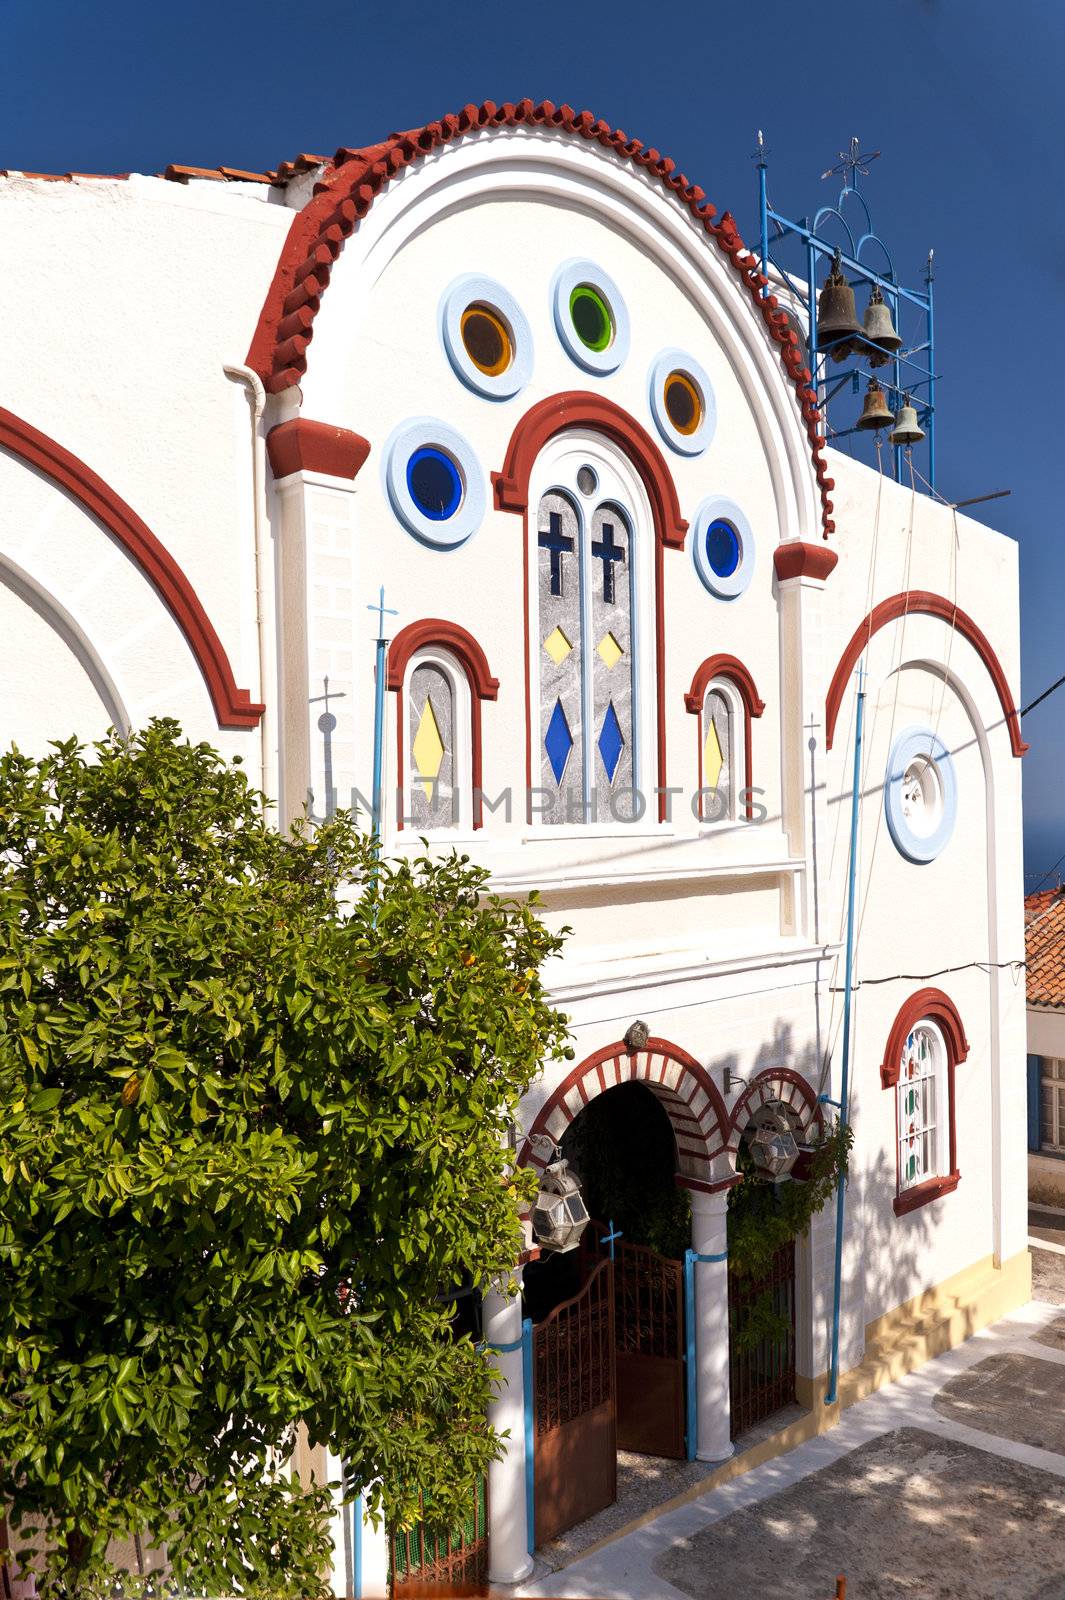 Church on Samos